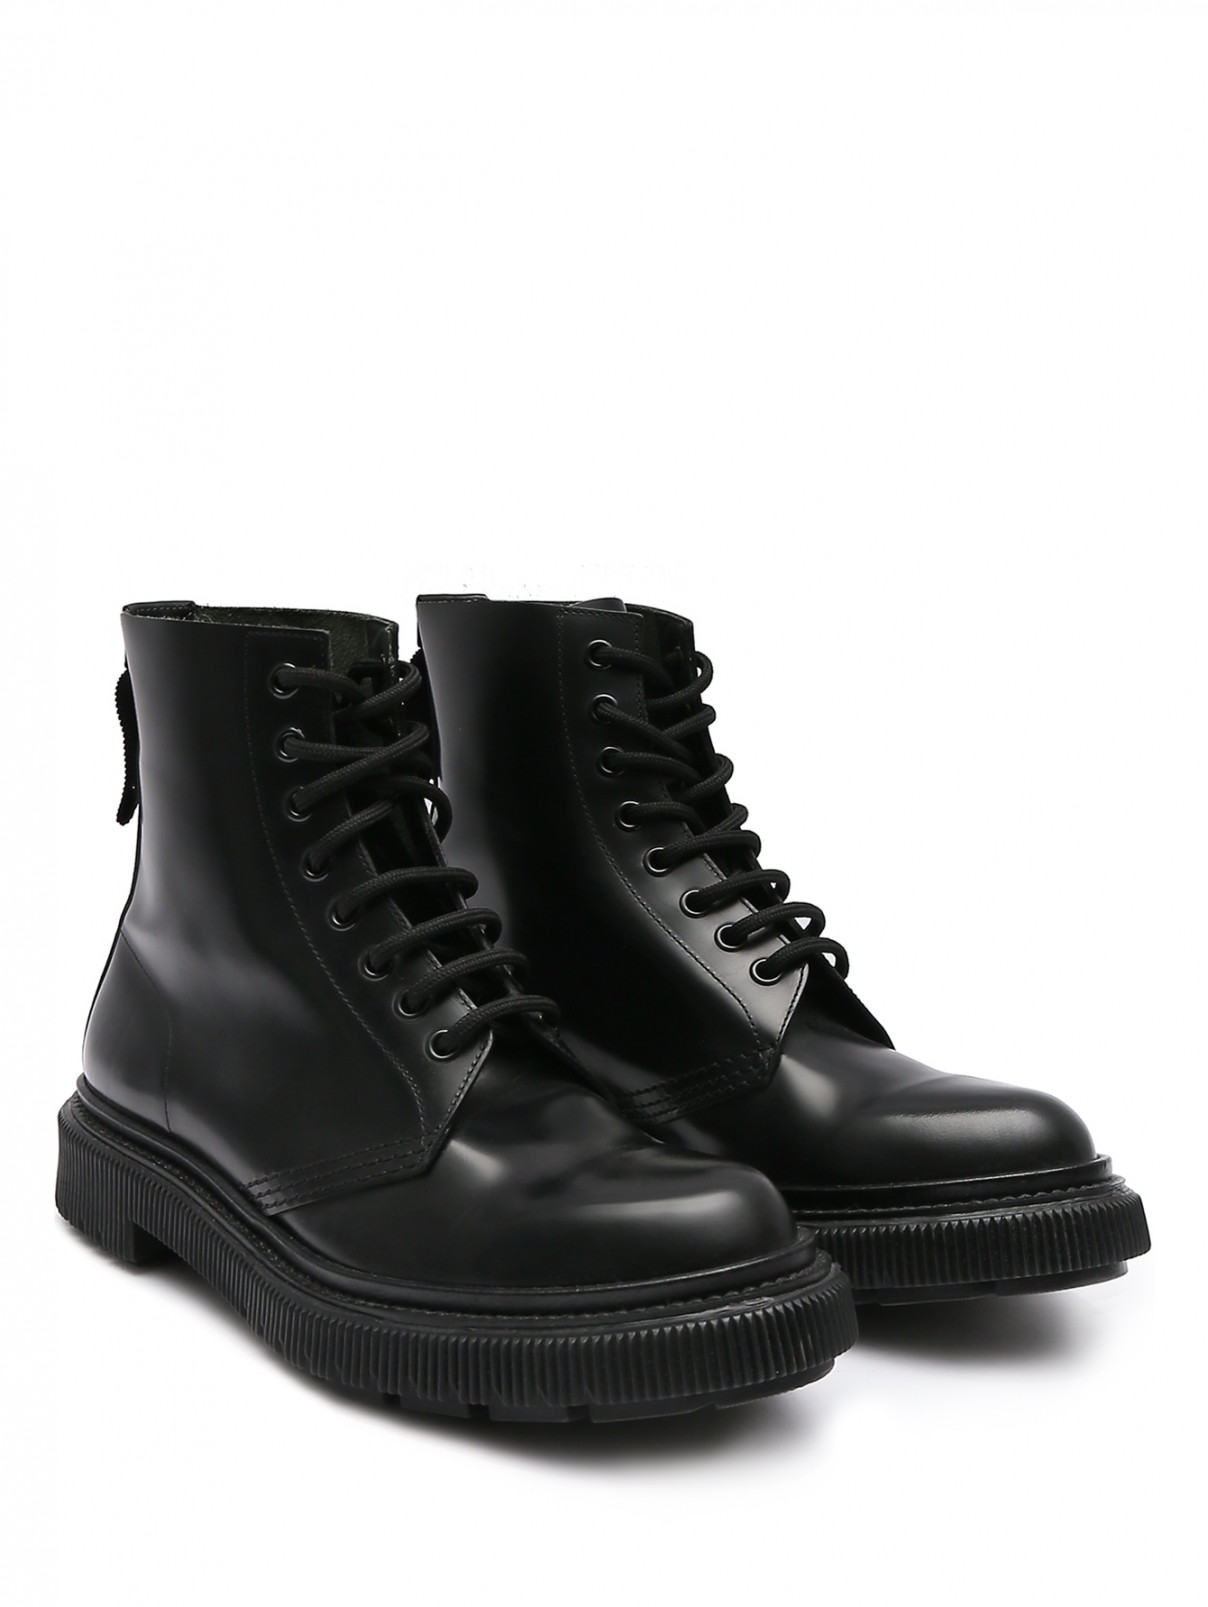 Ботинки из гладкой кожи на шнурках Adieu Paris  –  Общий вид  – Цвет:  Черный